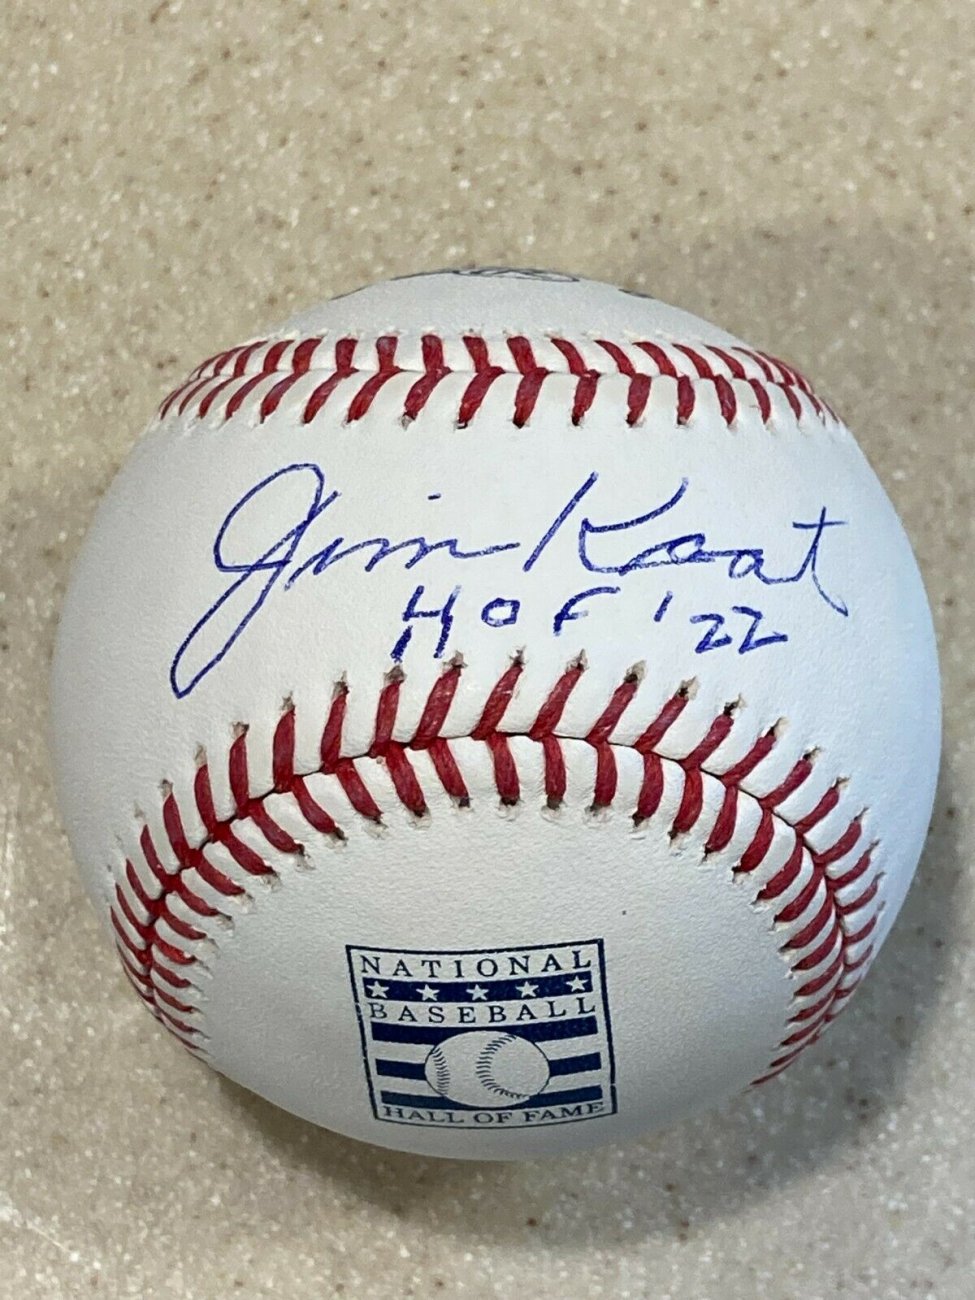 Jim Kaat Autographed HOF Baseball Inscribed 2022 HOF Sweetspot.jpg